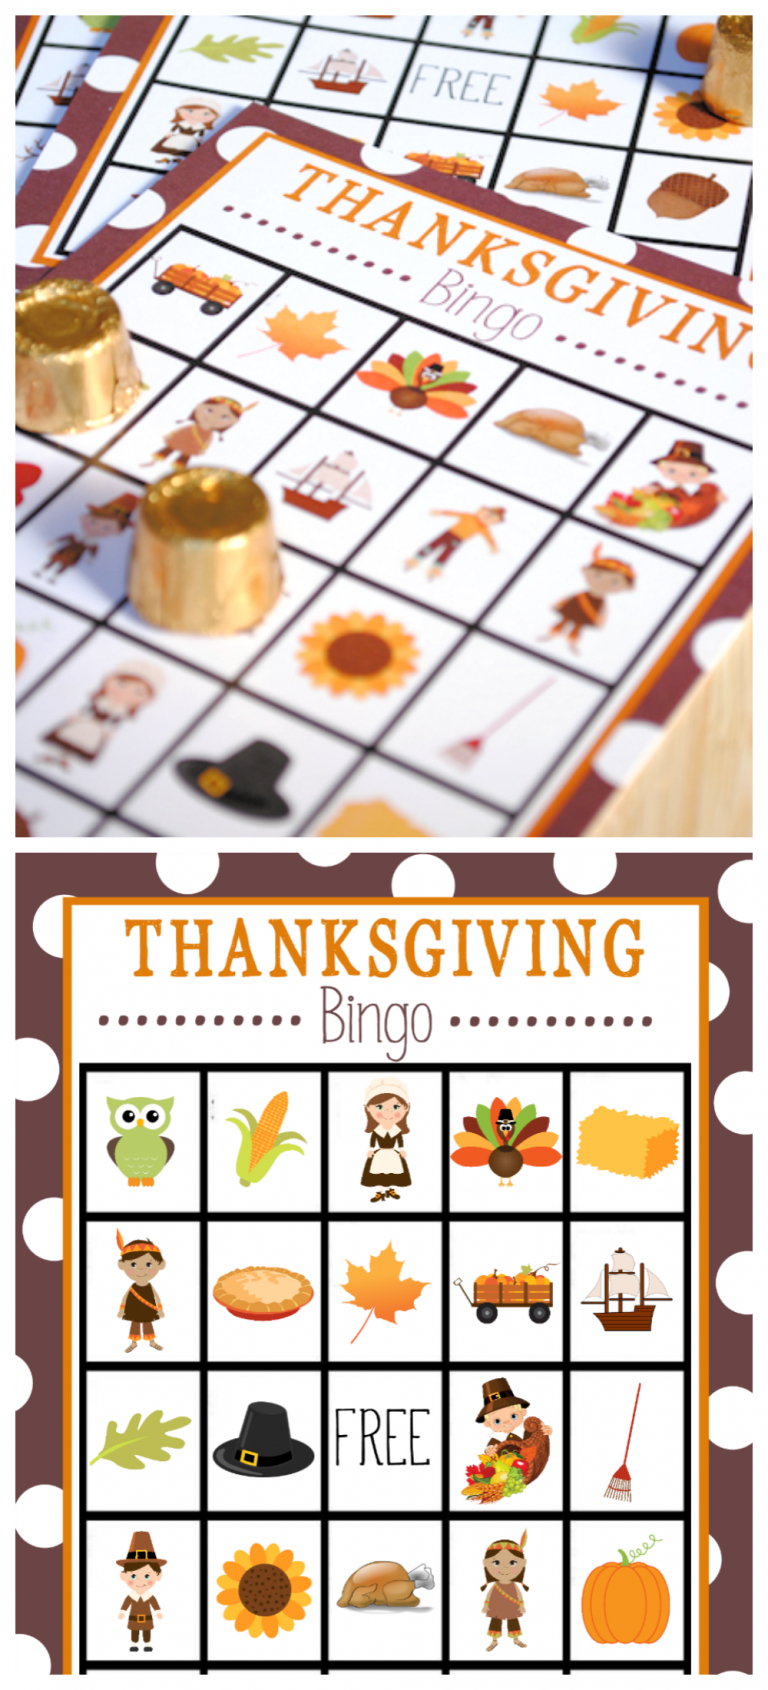 Free Printable Thanksgiving Bingo Game | Thanksgiving Bingo